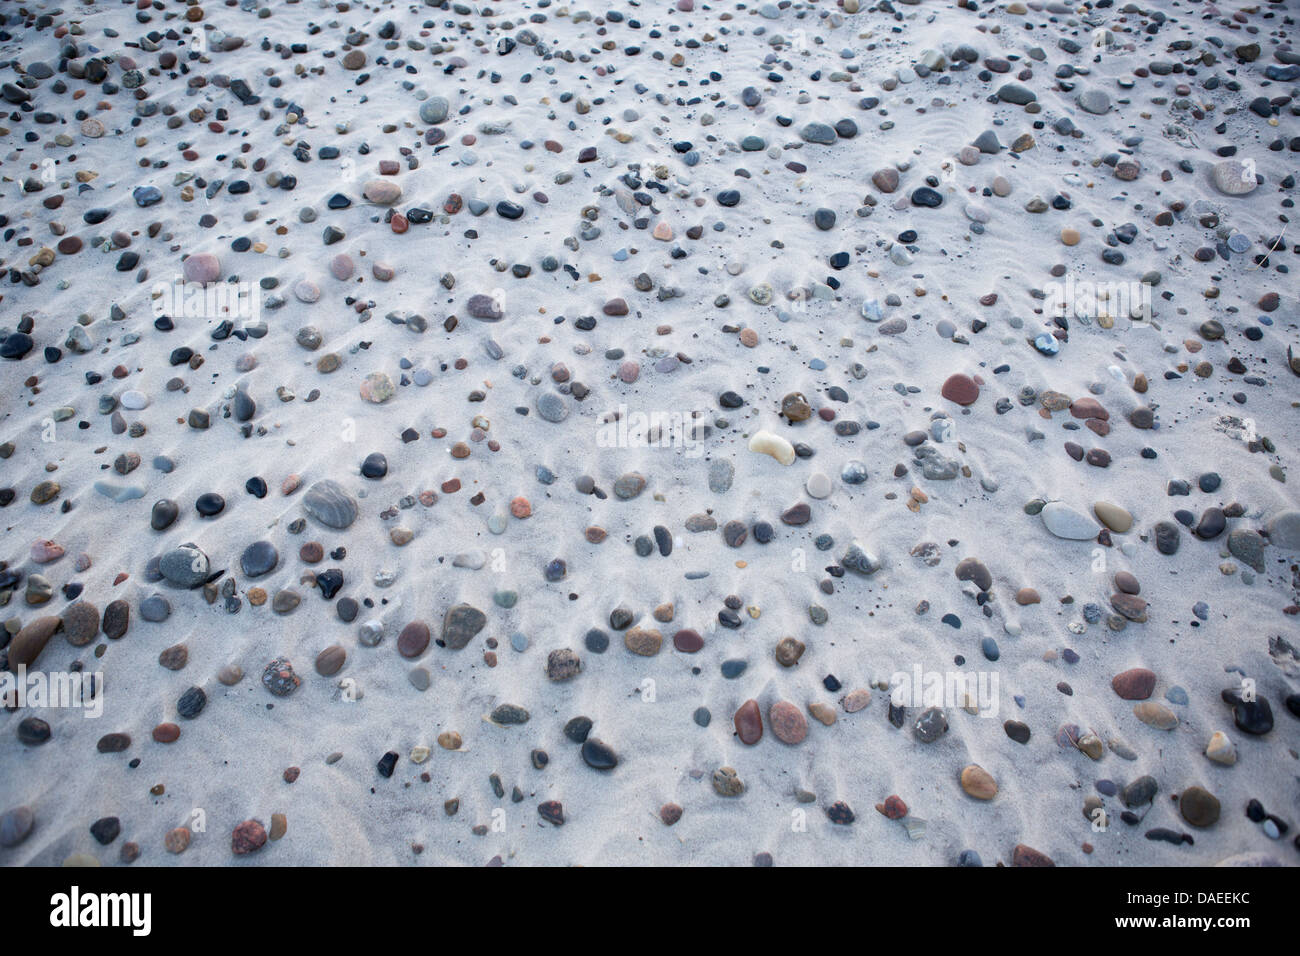 Pebbels sulla spiaggia in sabbia. Foto Stock